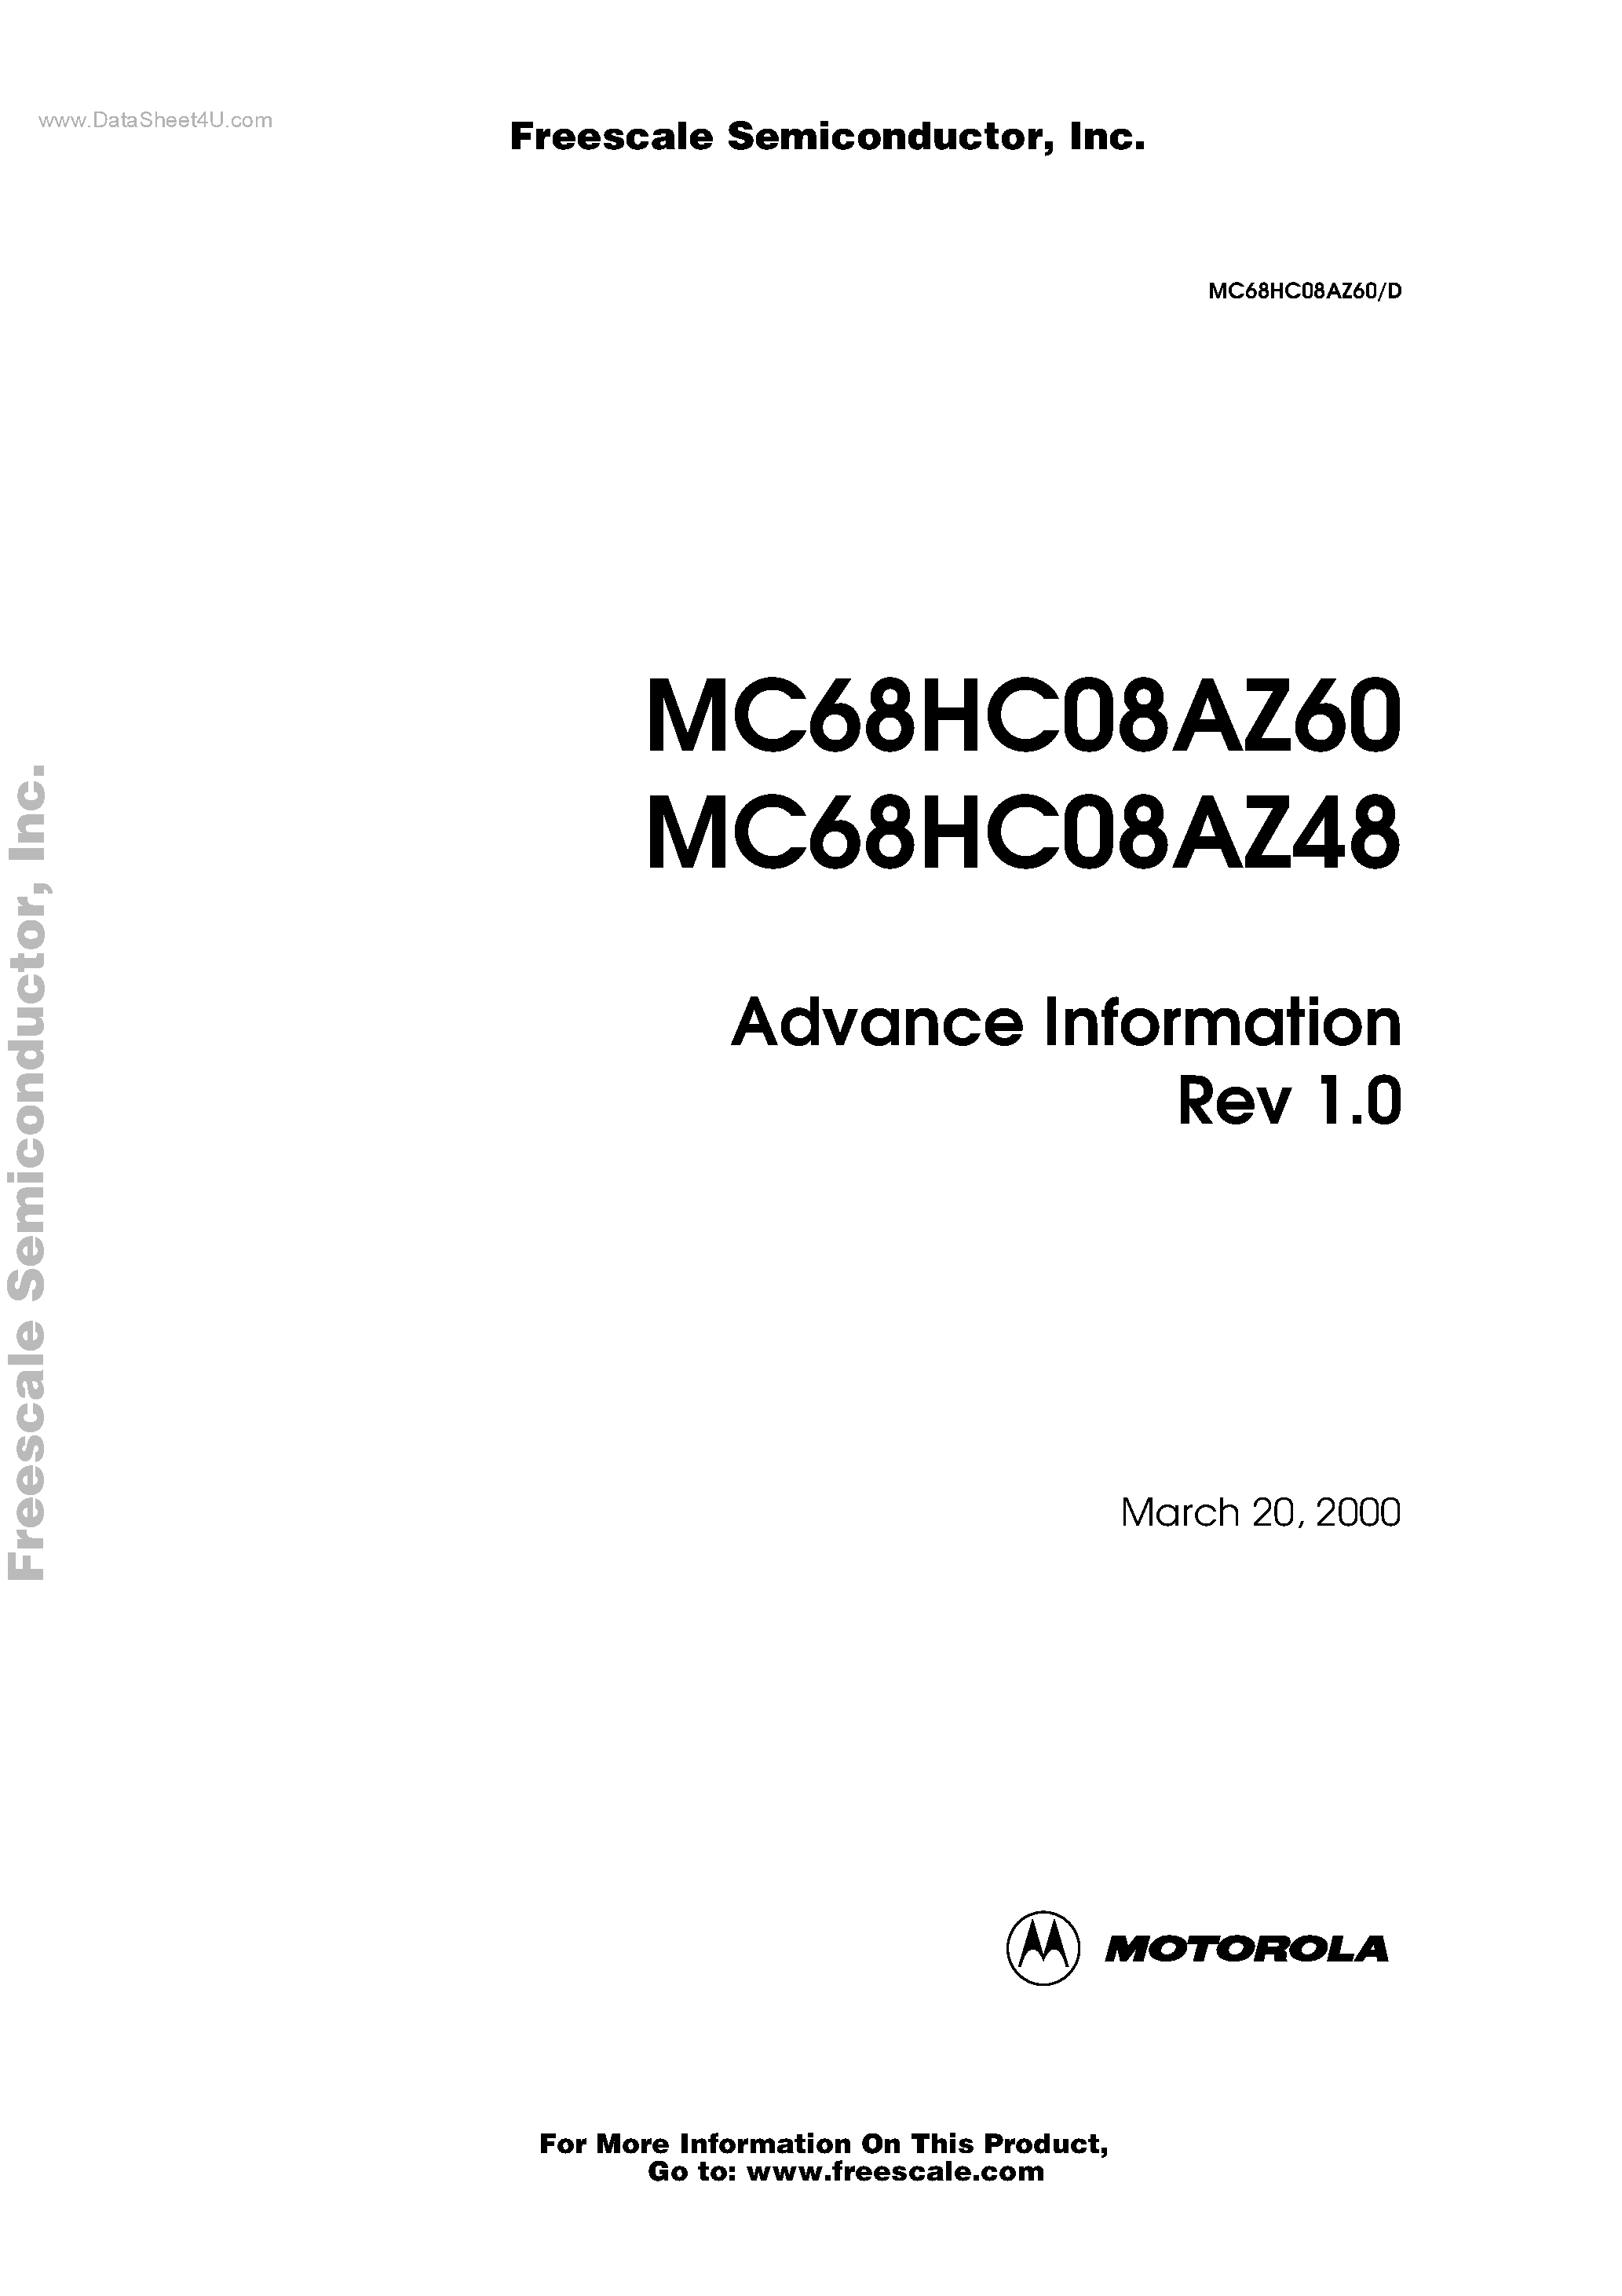 Datasheet MC68HC08AZ48 - (MC68HC08AZ48 / MC68HC08AZ60) Advance Information page 1